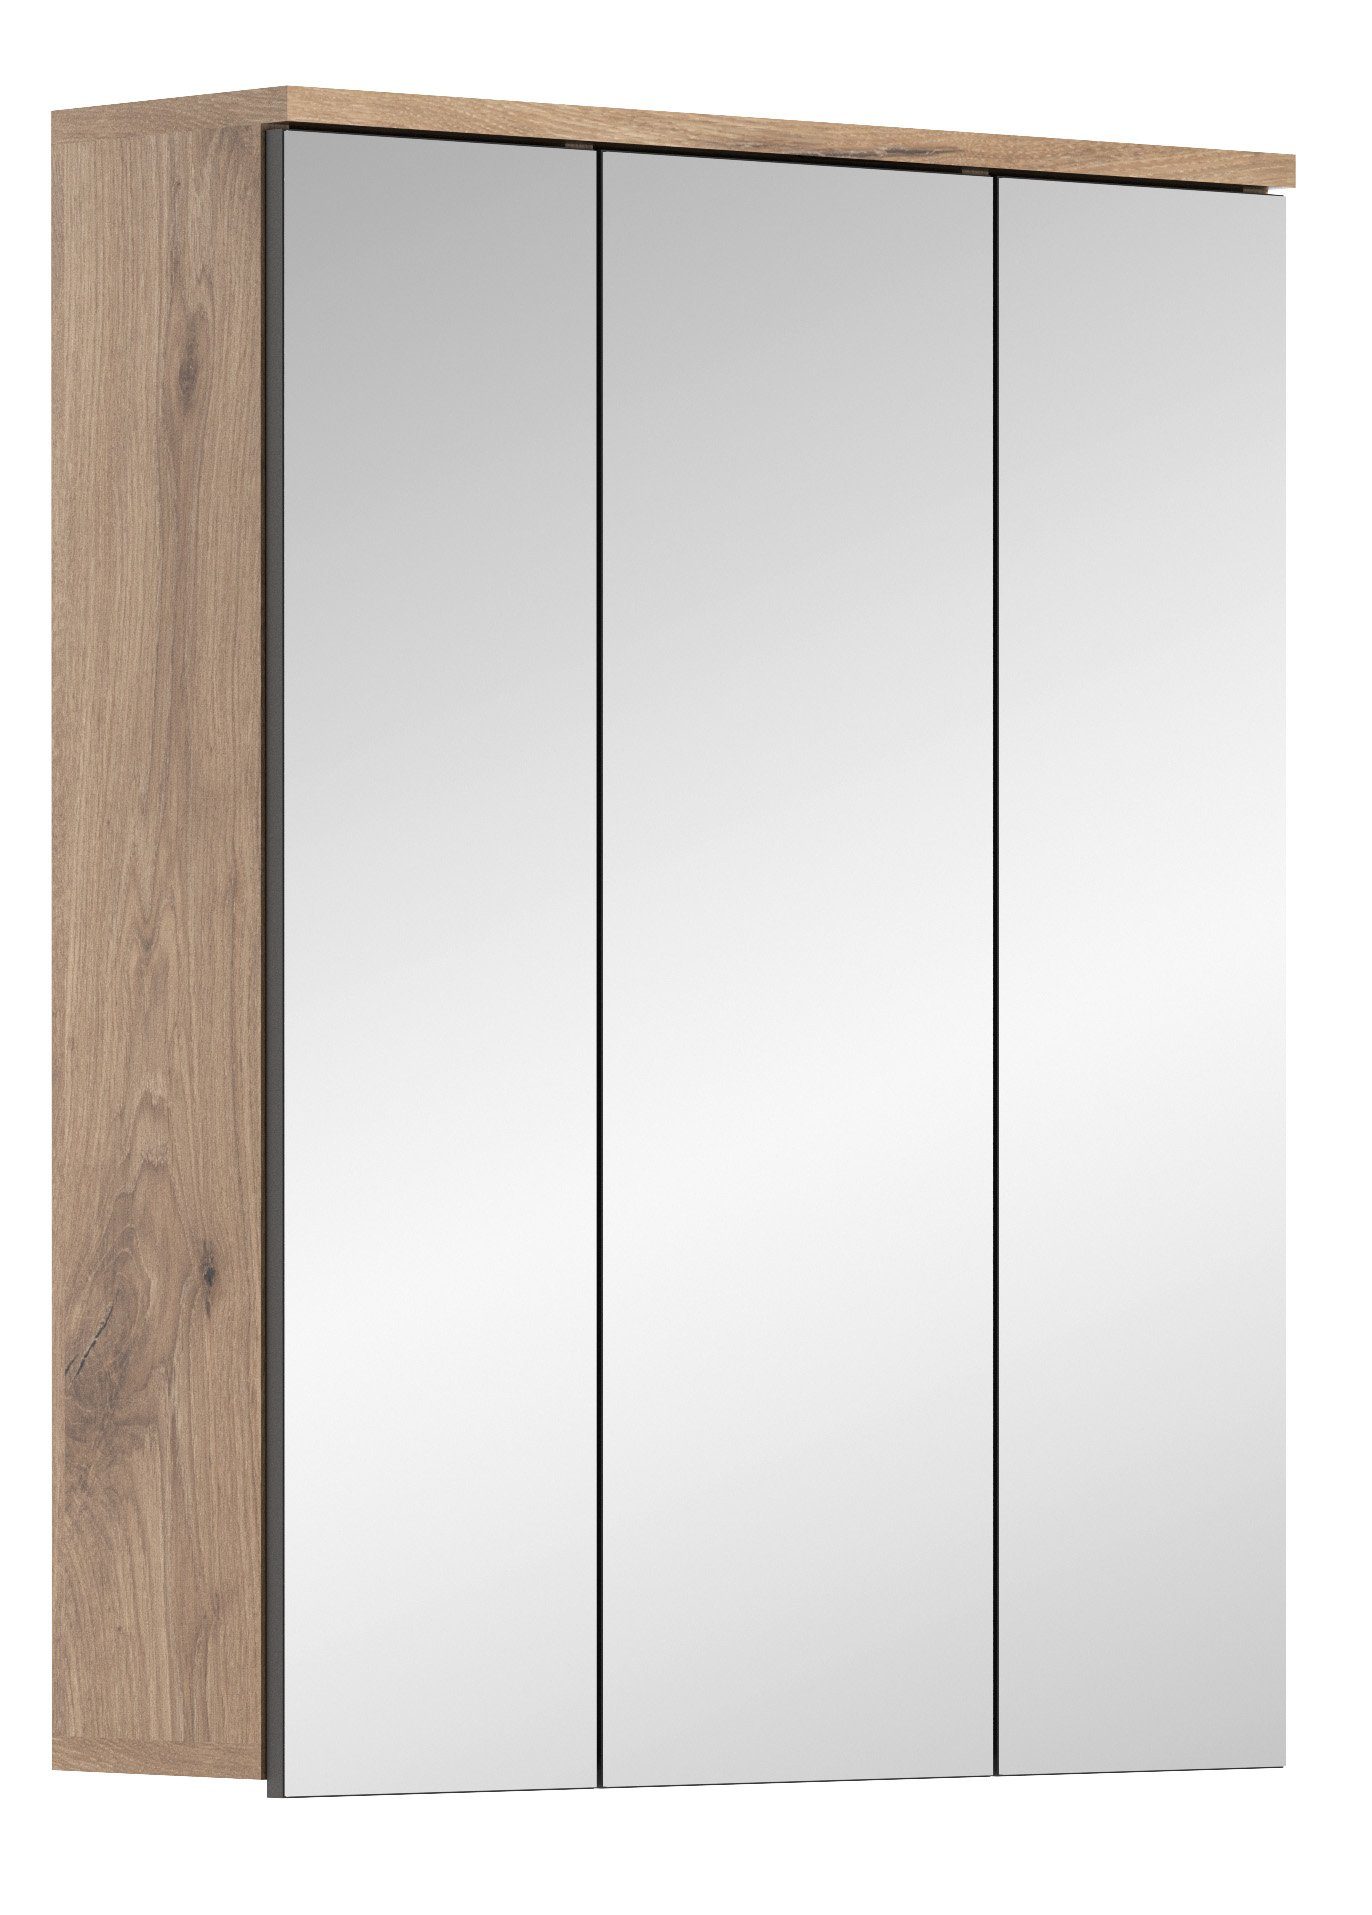 Badezimmerspiegelschrank Oak Eiche in Korpus TK8 Nox Nachbildung Modell I Spiegelfront Spiegelschrank kuup the I Hochwertige I